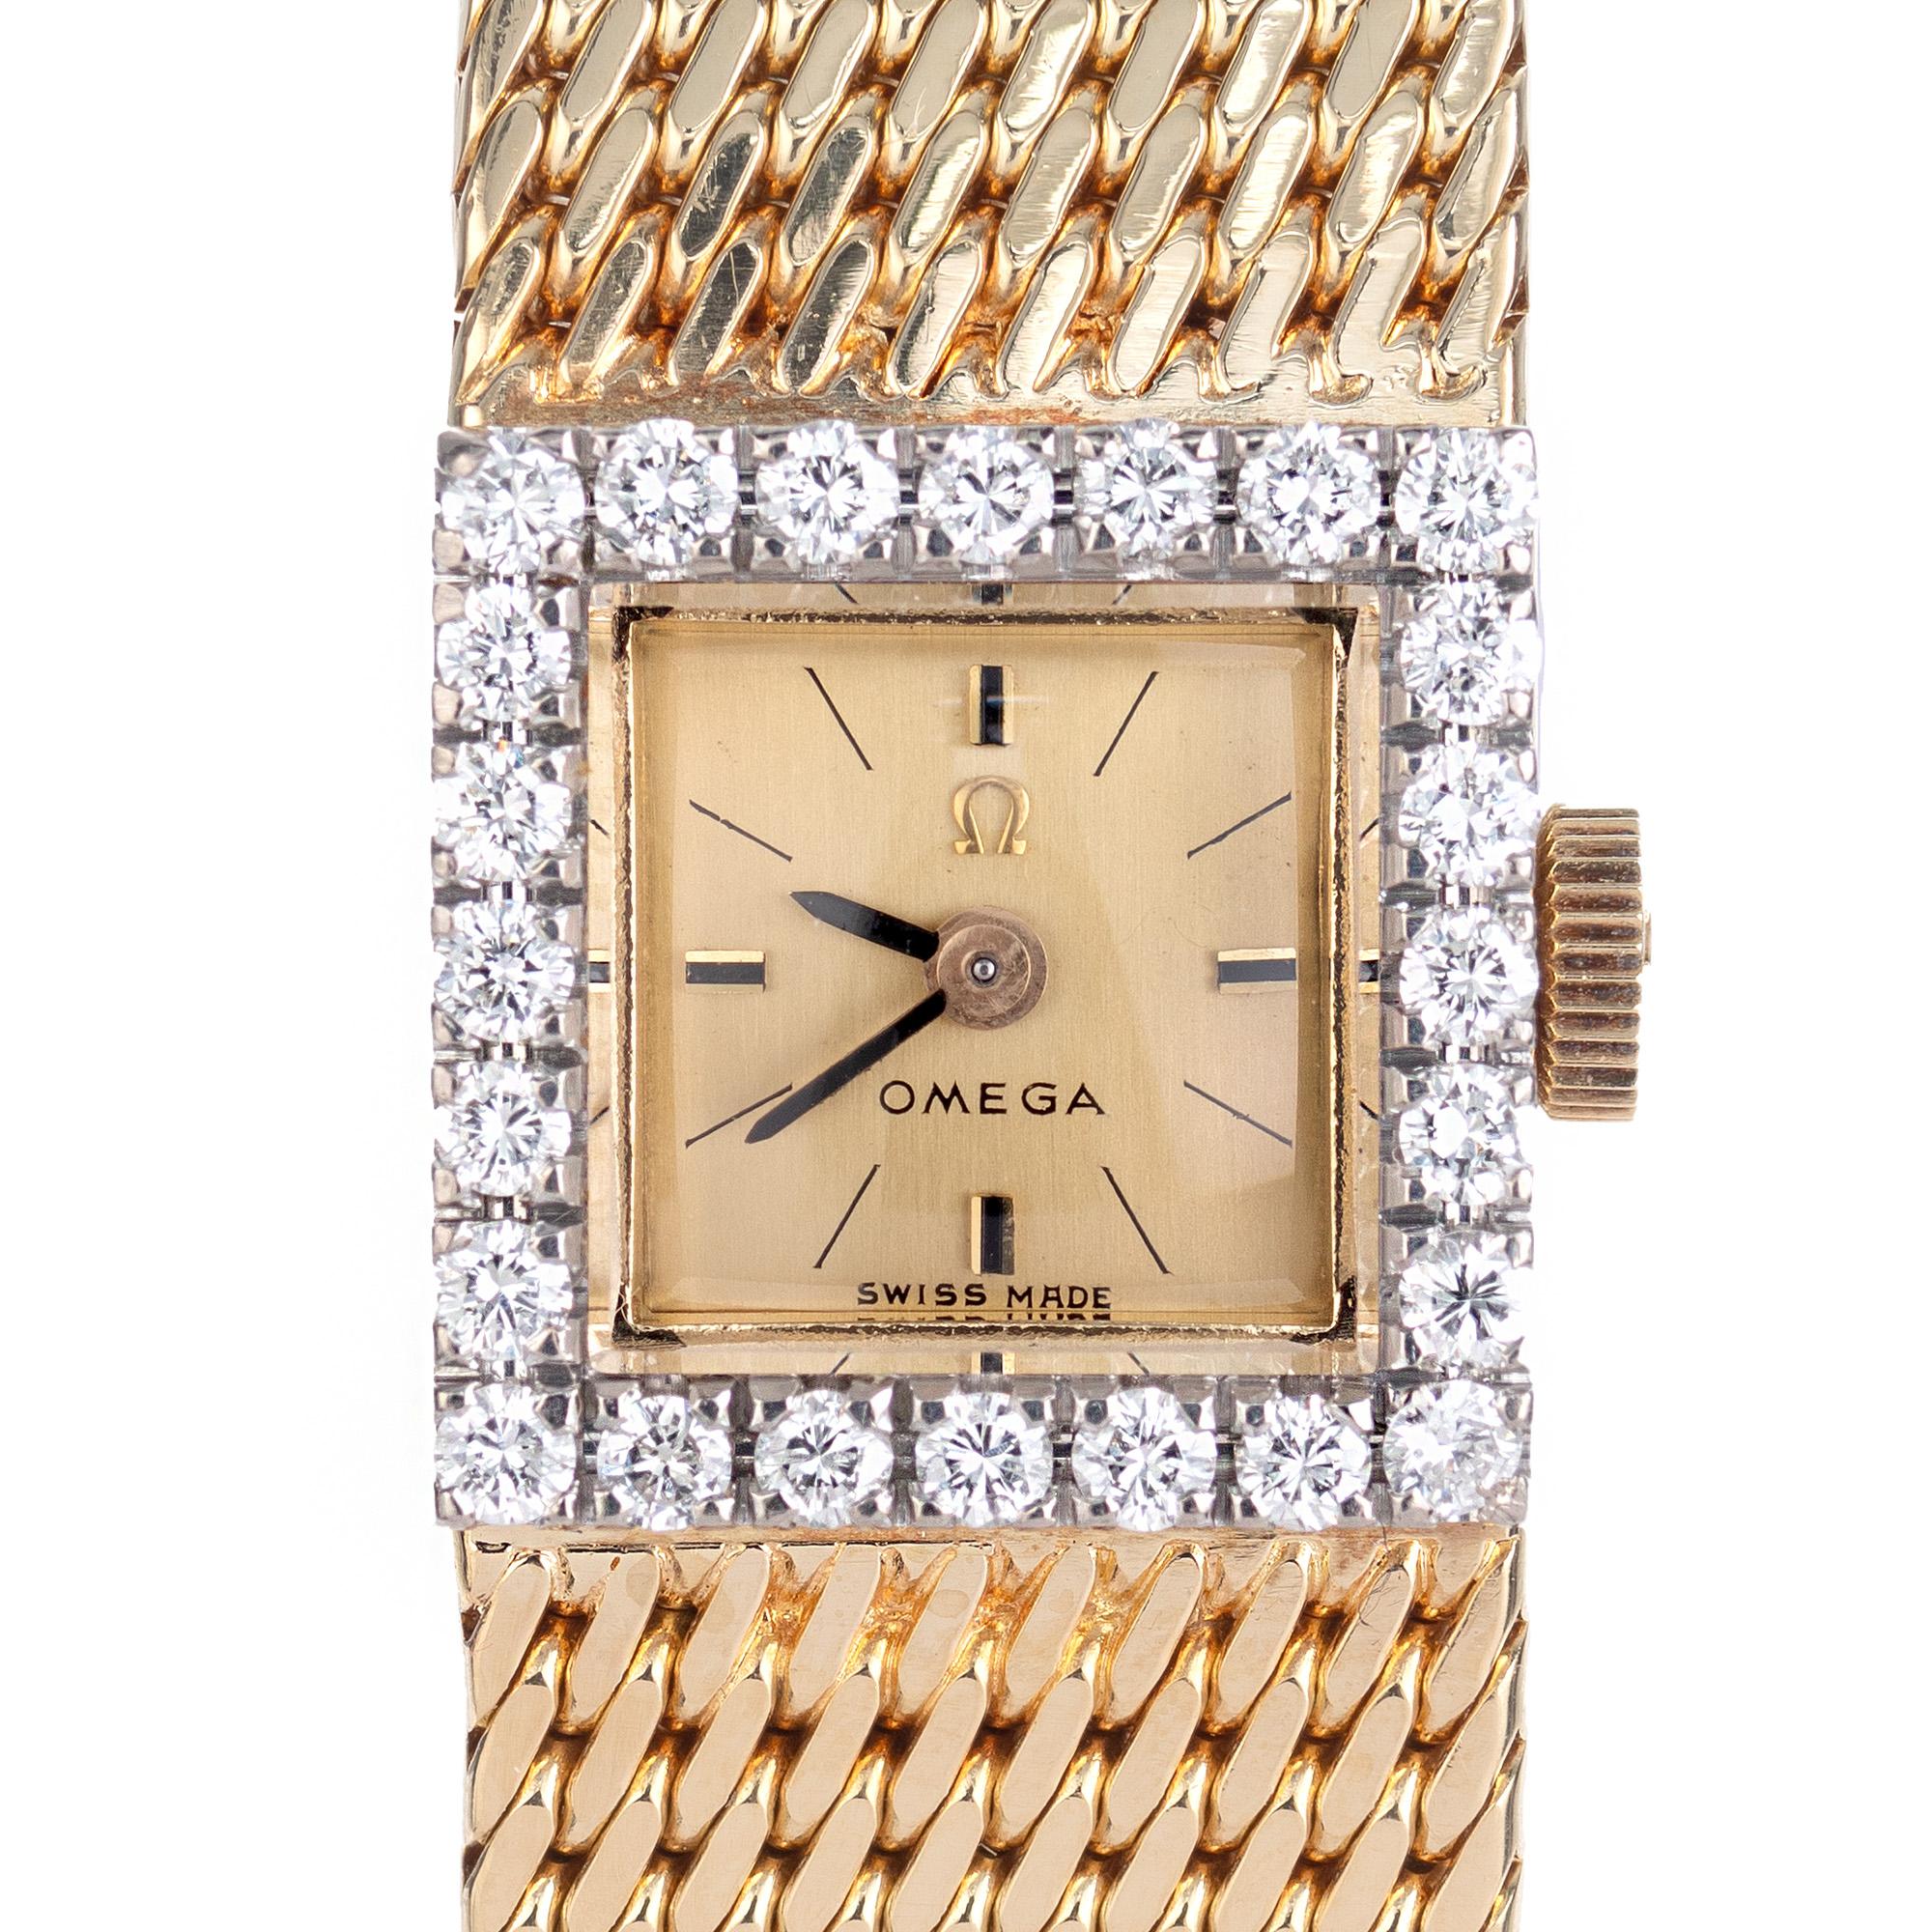 Montre-bracelet Omega à diamants pour dames de la fin des années 1960. Whiting en or jaune 18 carats rehaussé de 24 diamants de taille ronde le long de la lunette qui sont sertis en or blanc 18 carats. Bandeau en maille oméga solide. 

24 diamants